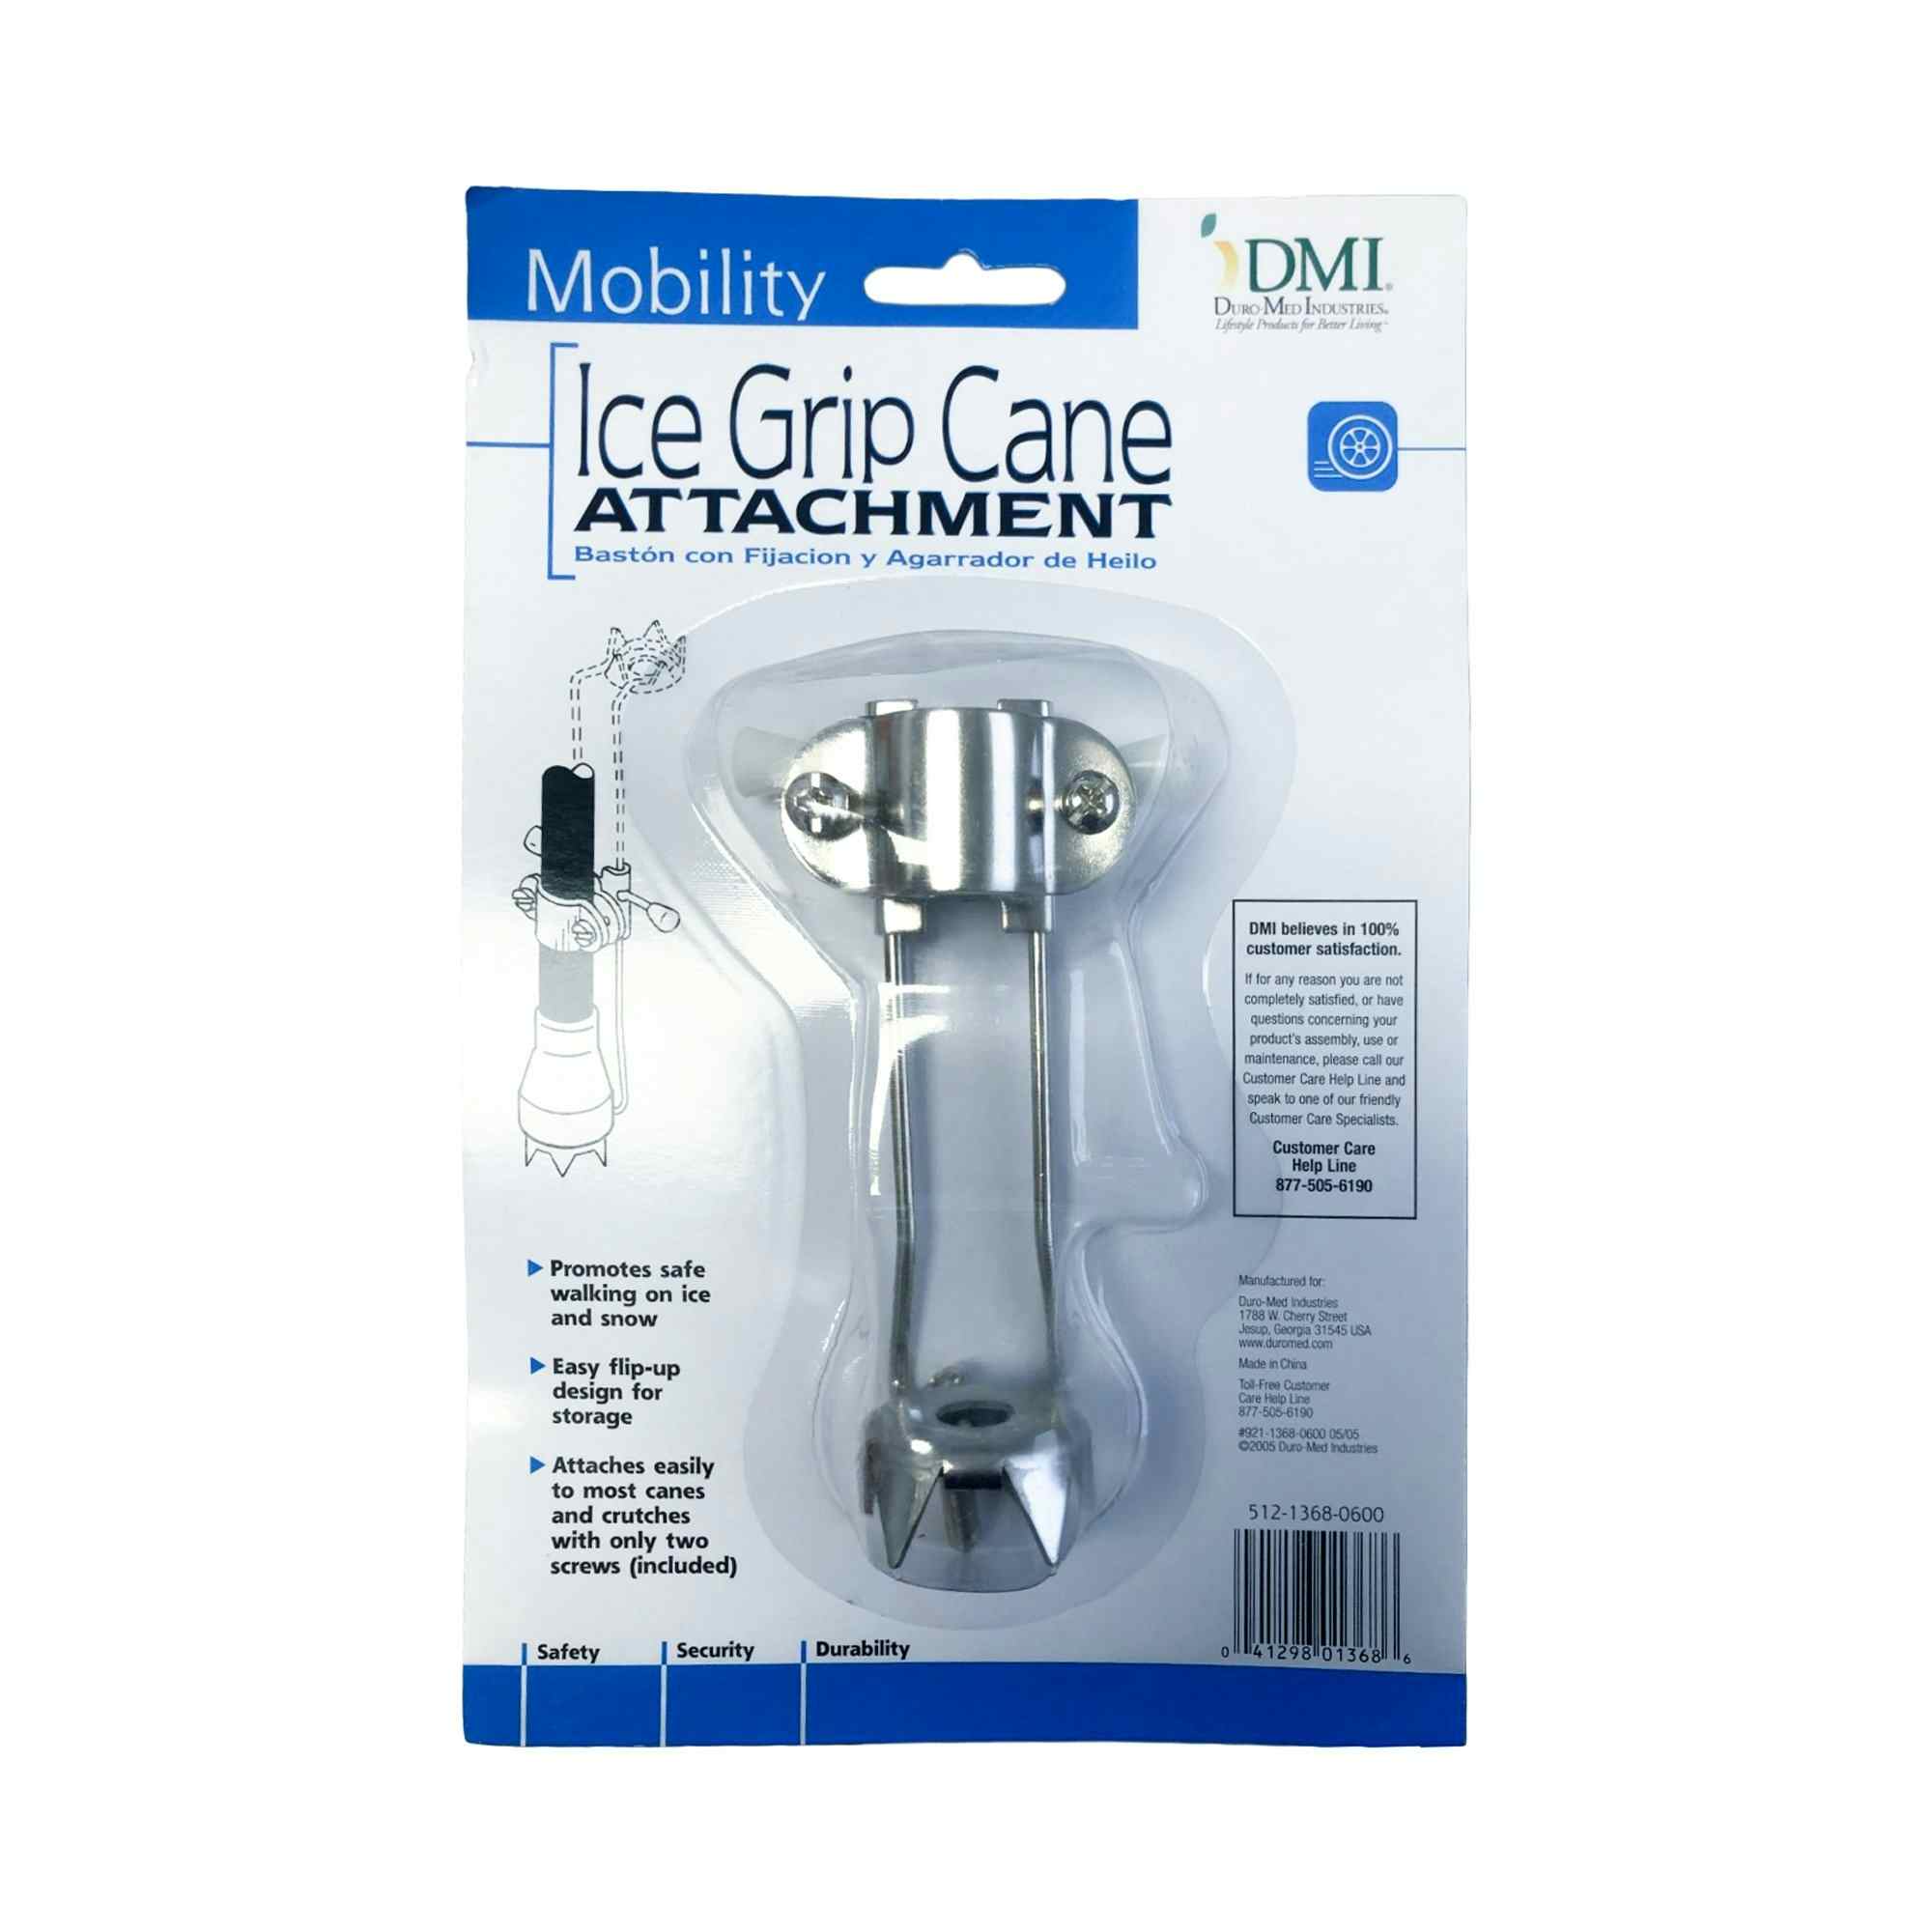 DMI Ice Grip Cane Attachment, 512-1368-0600, 1 Each